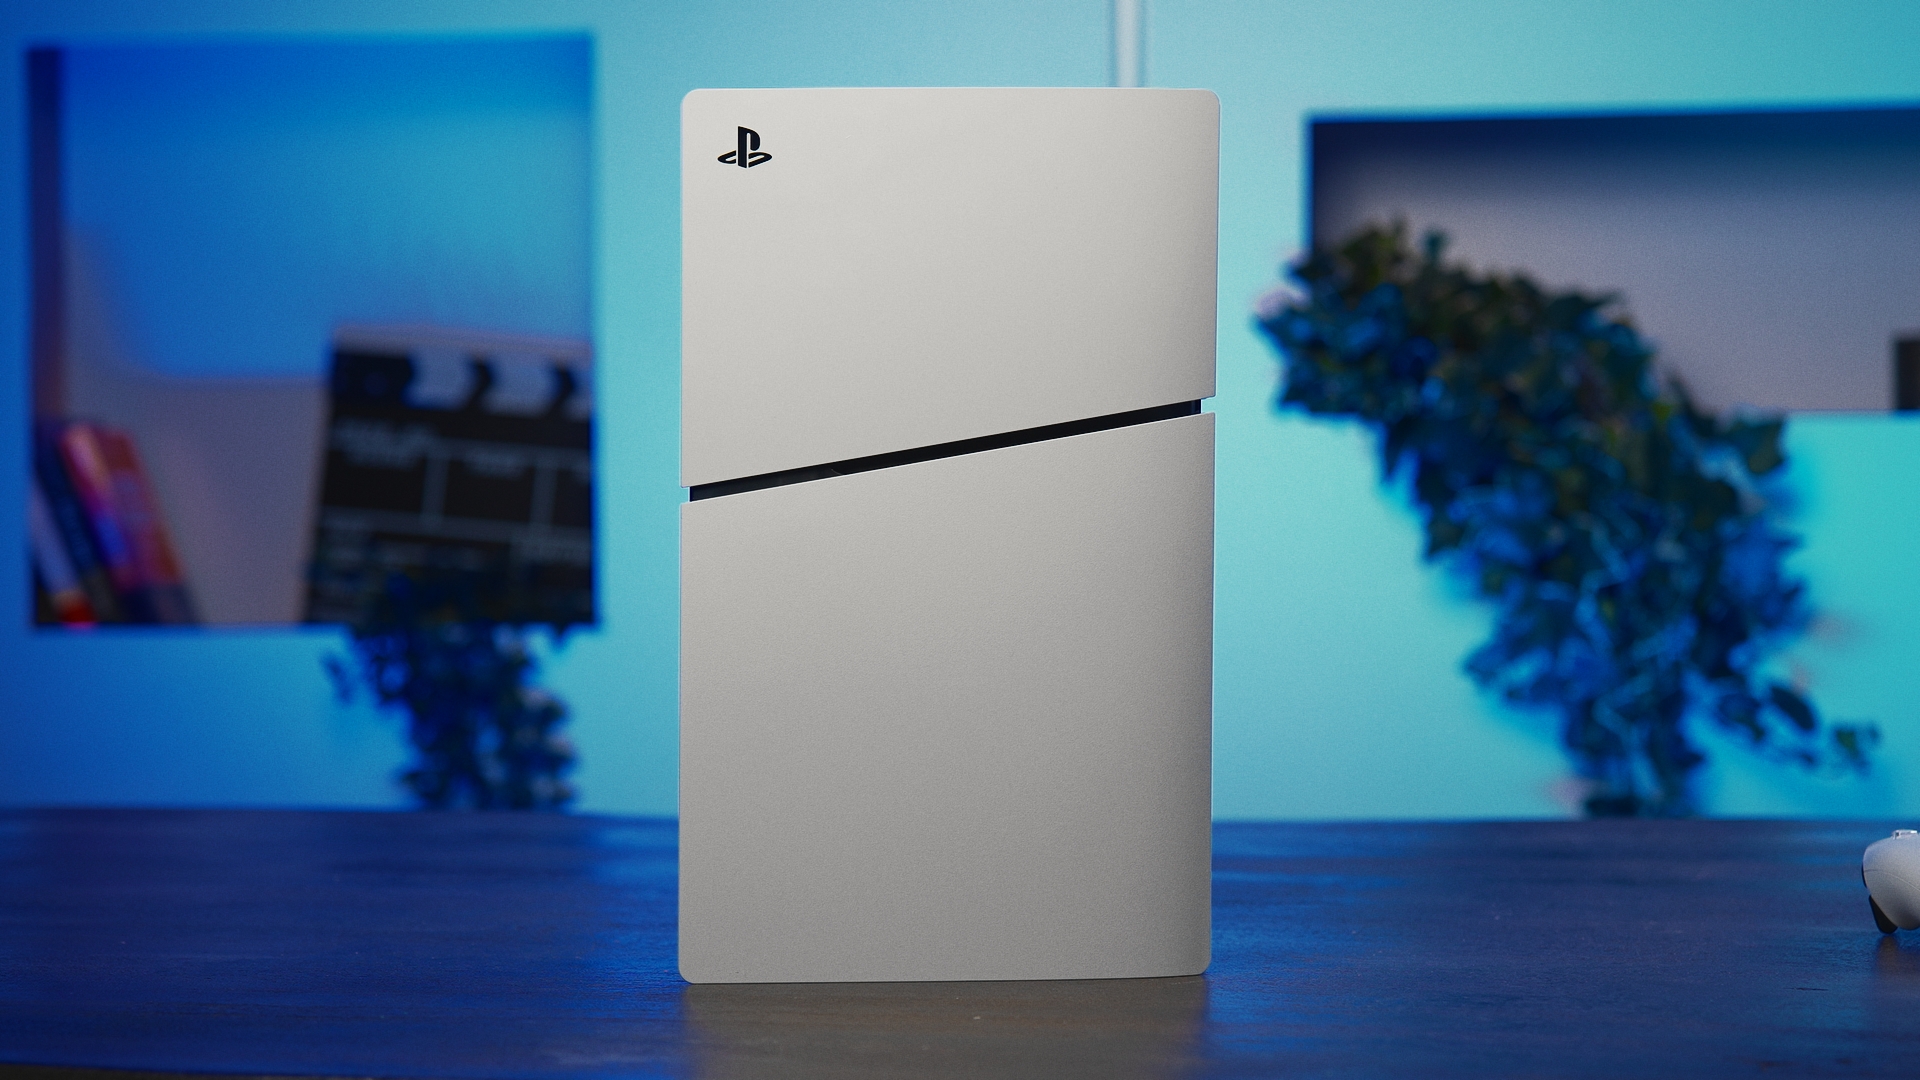 PS5 : une nouvelle version Slim avec un lecteur de disque amovible arrive  en novembre, c'est officiel